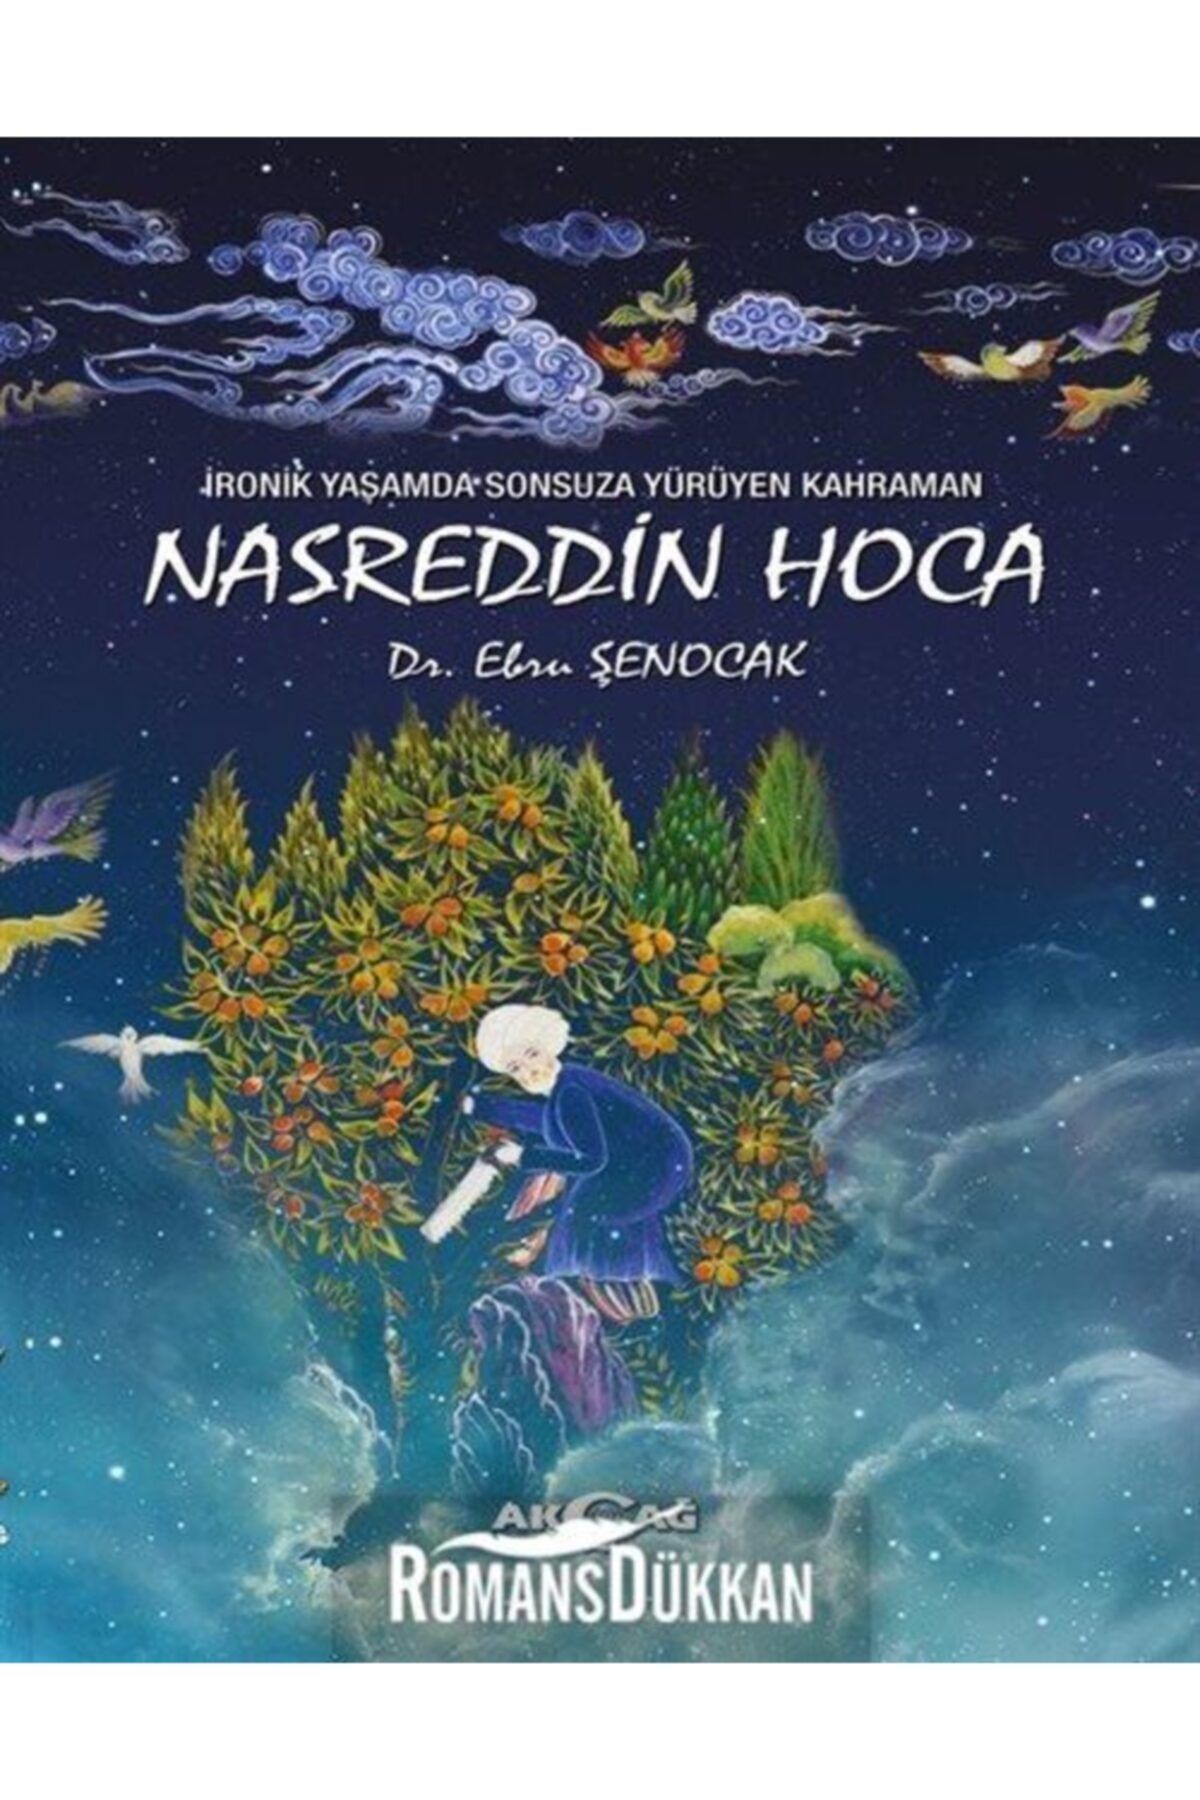 Akçağ Yayınları Ironik Yaşamda Sonsuza Yürüyen Kahraman Nasreddin Hoca